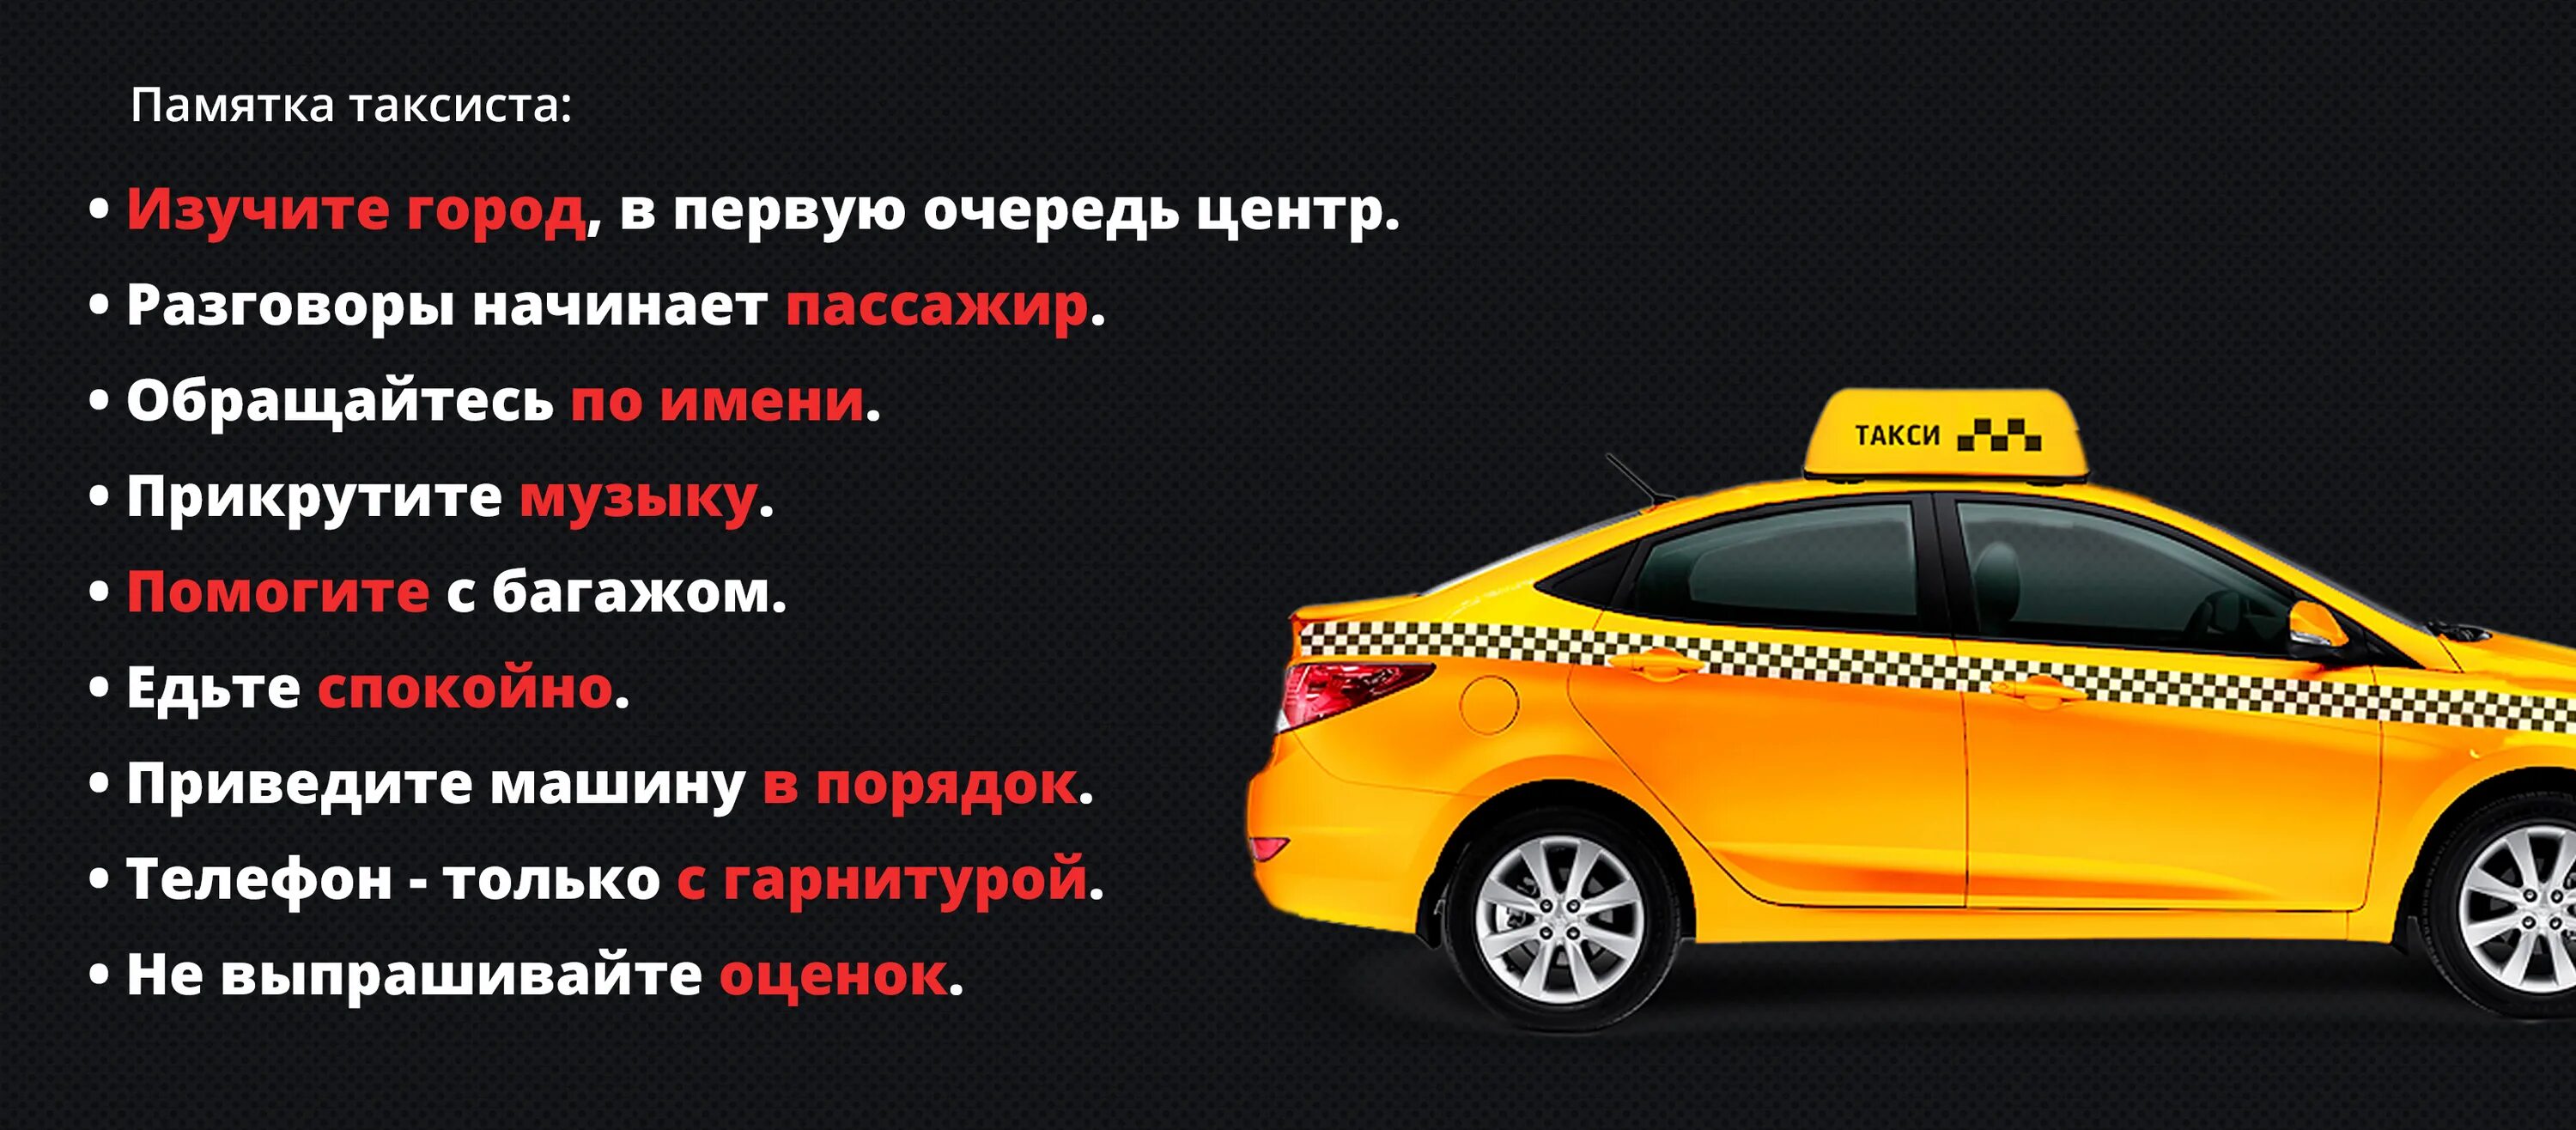 Нужно такси заказывать. Правила таксиста. Реклама для водителей такси. Правила работы такси. Объявление для водителей такси.